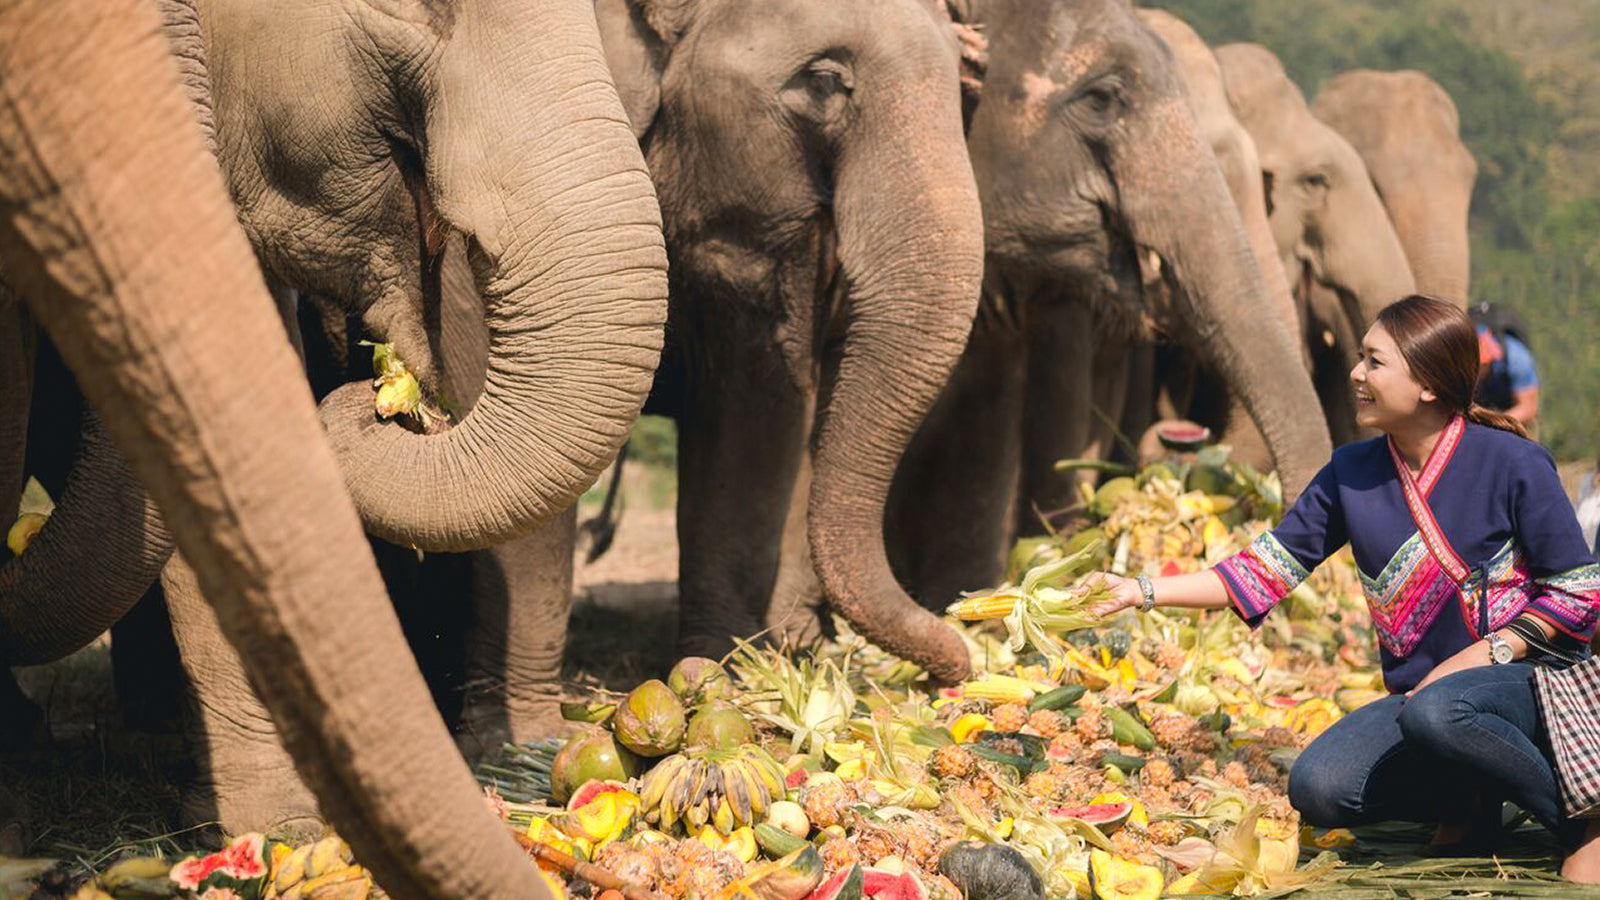 A woman feeds a group of elephants